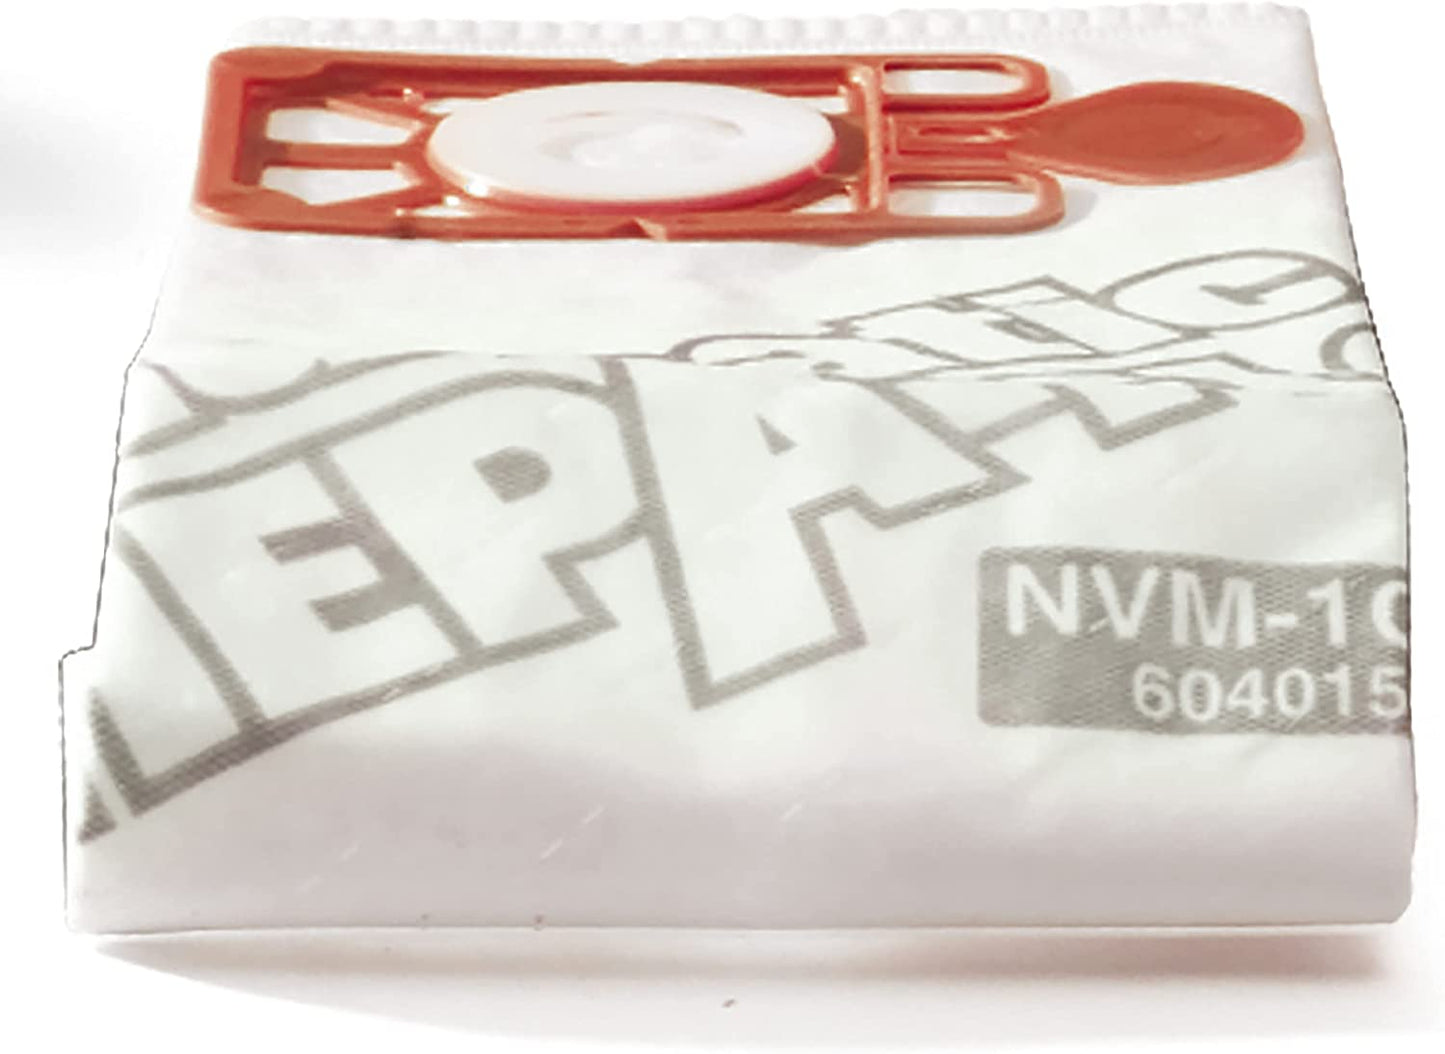 Henry NVM-1CH/907075 HepaFlo Vacuum Bags Pack 10's